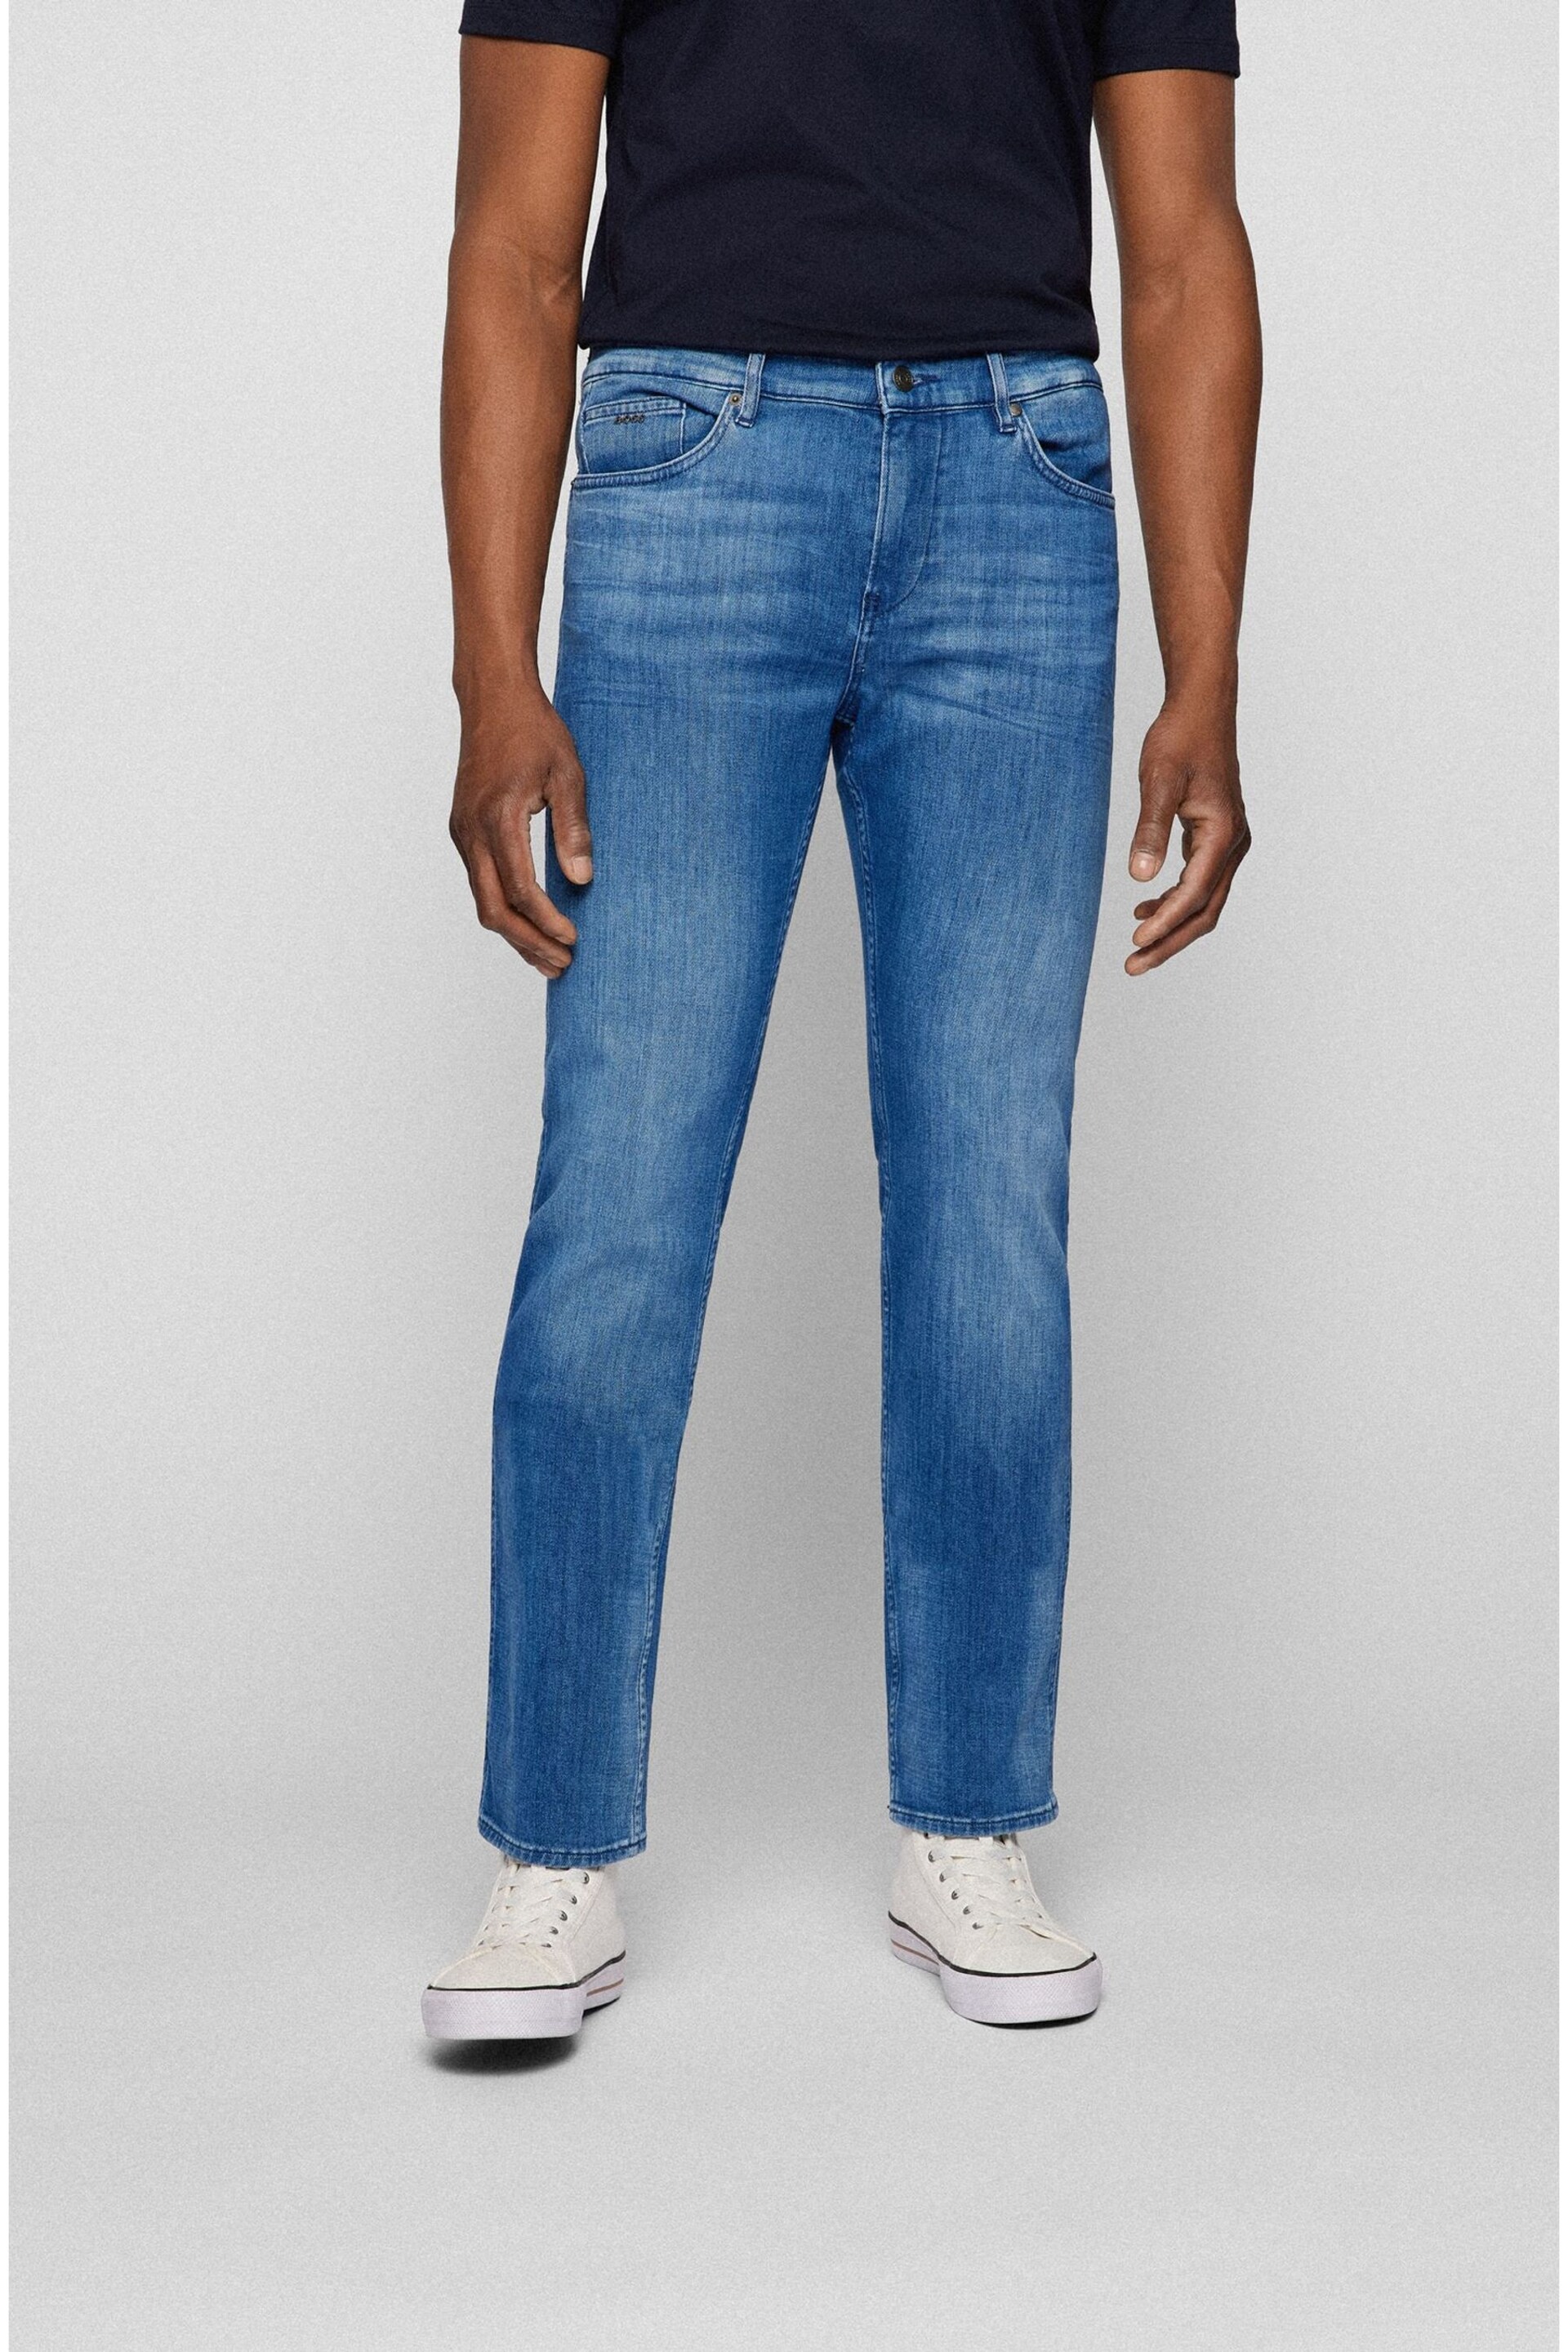 BOSS Light Blue Delaware Slim Fit Jeans - Image 1 of 5